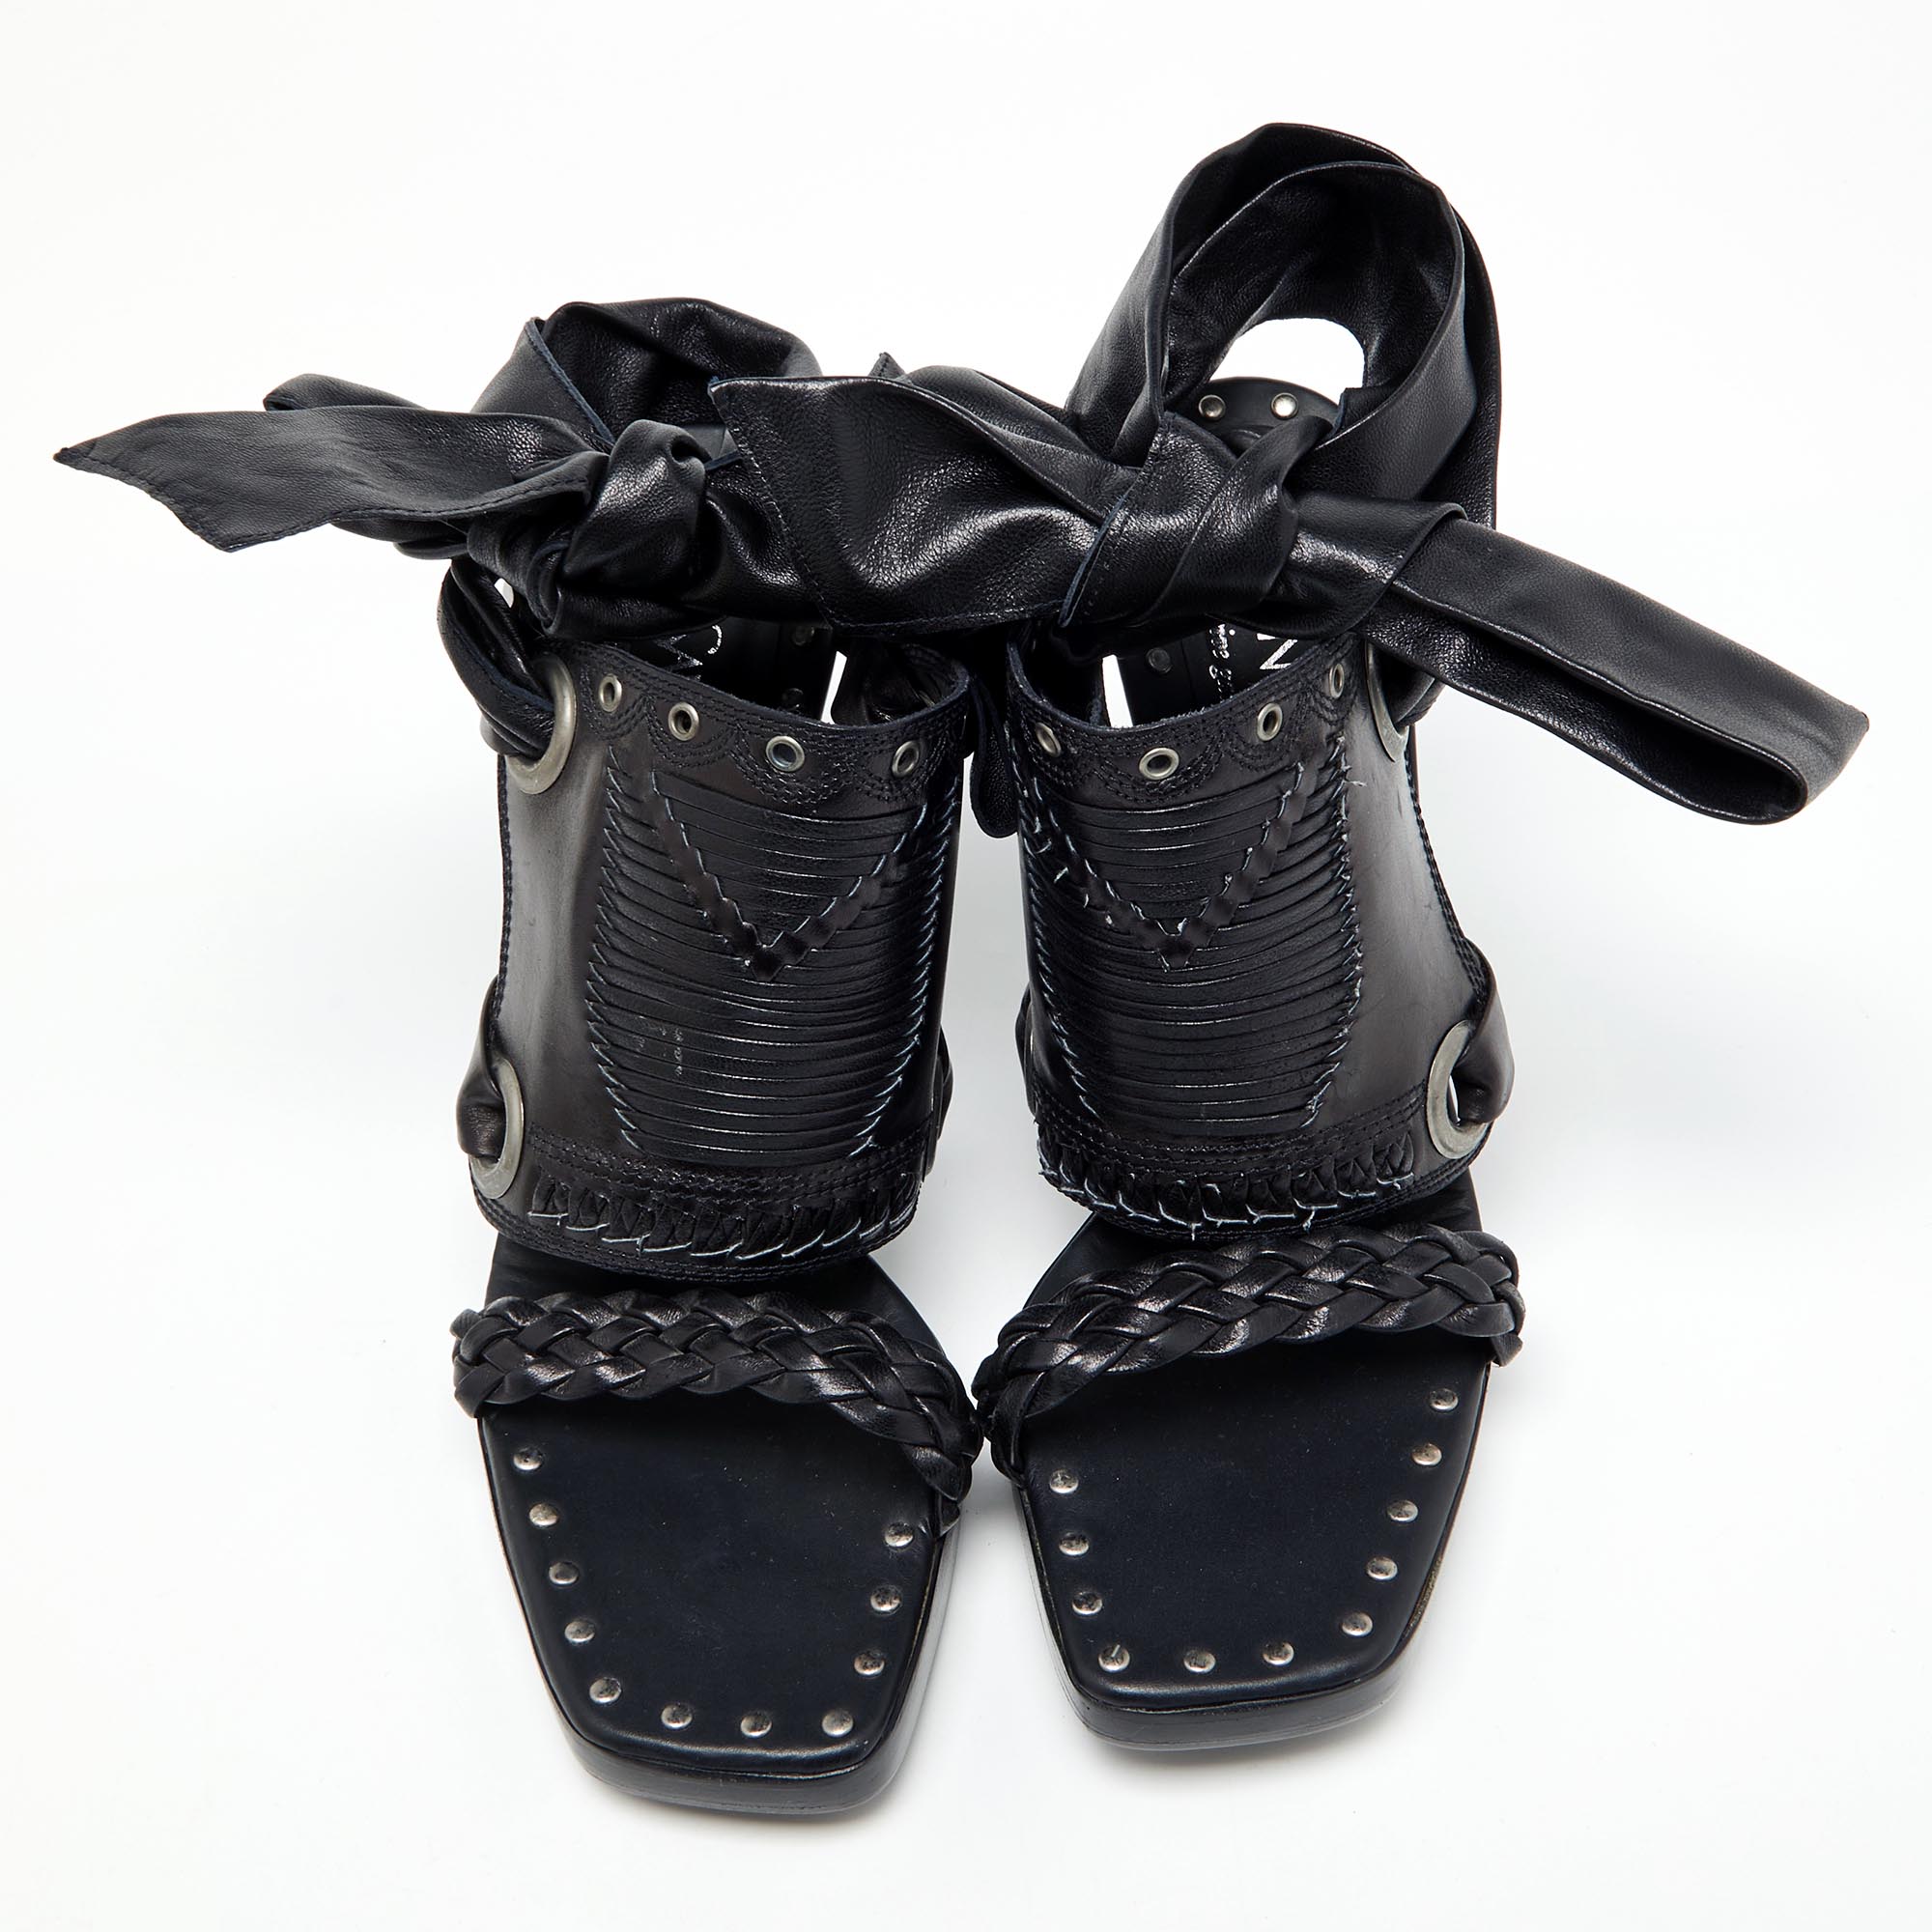 Yves Saint Laurent Black Leather Open Toe Ankle Wrap Sandals Size 37